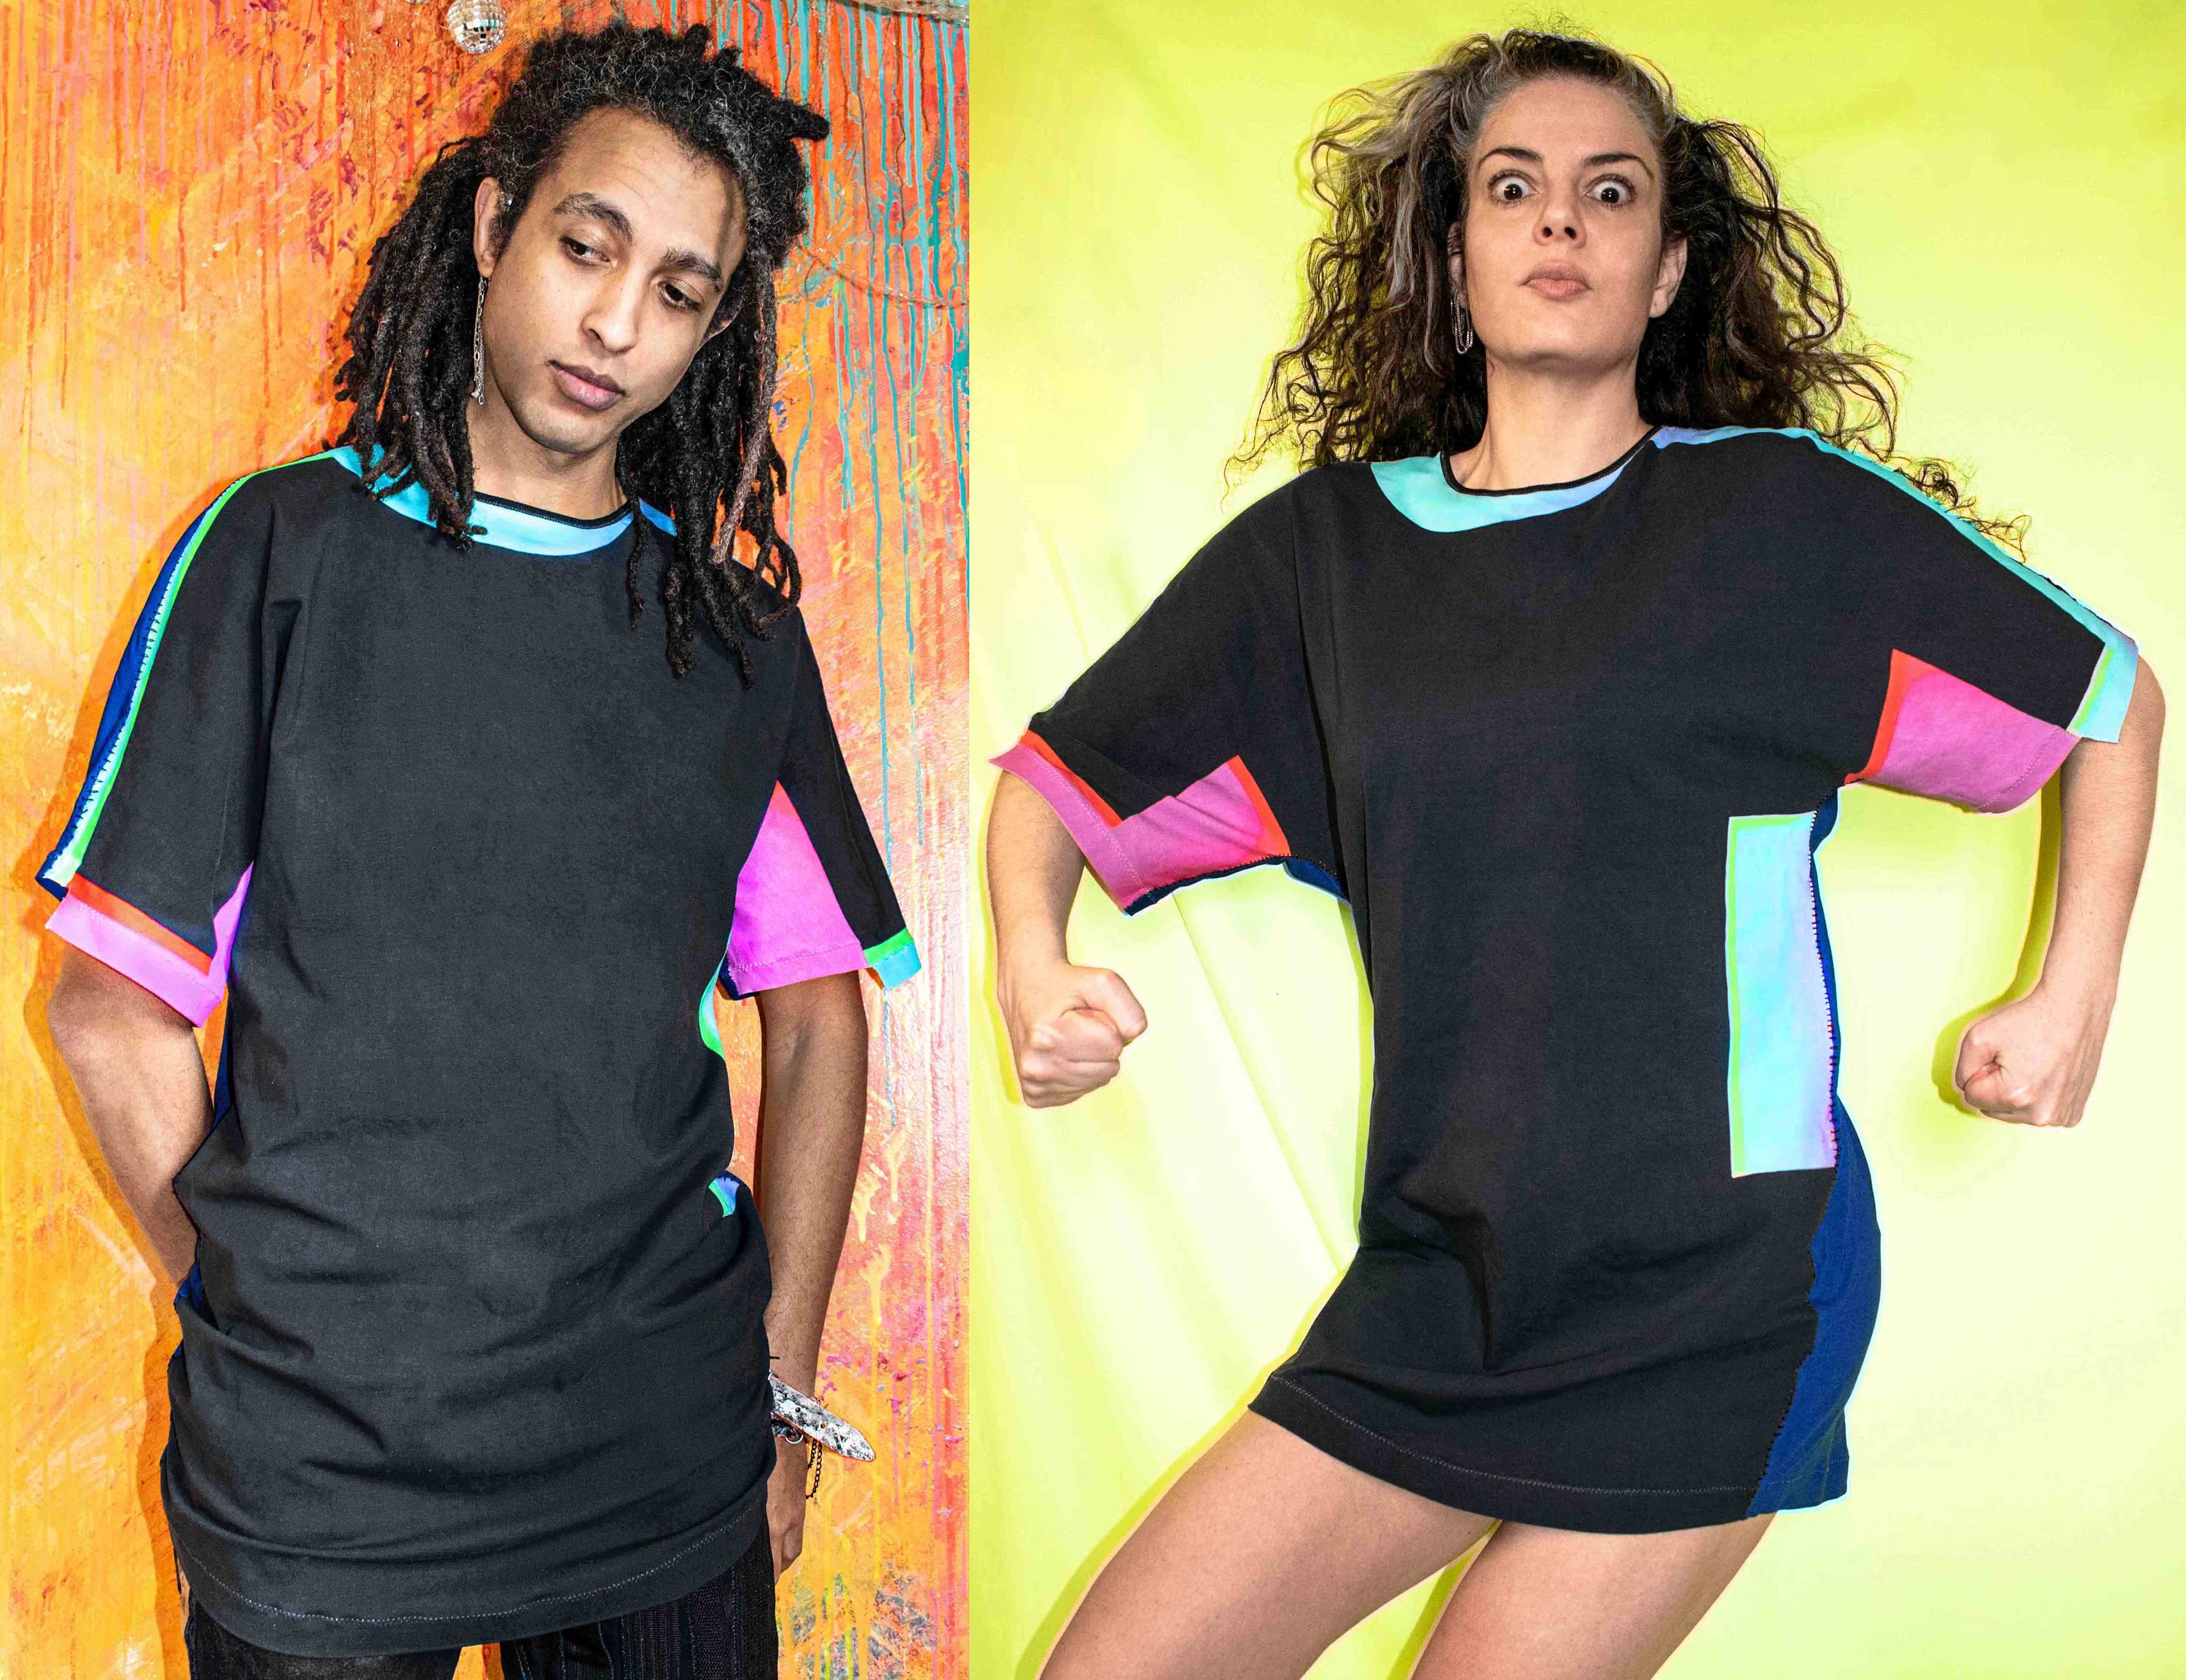 manifestation Skuldre på skuldrene Excel Graphic Oversized T Shirt Dress Digital Printed Hip Hop - Etsy